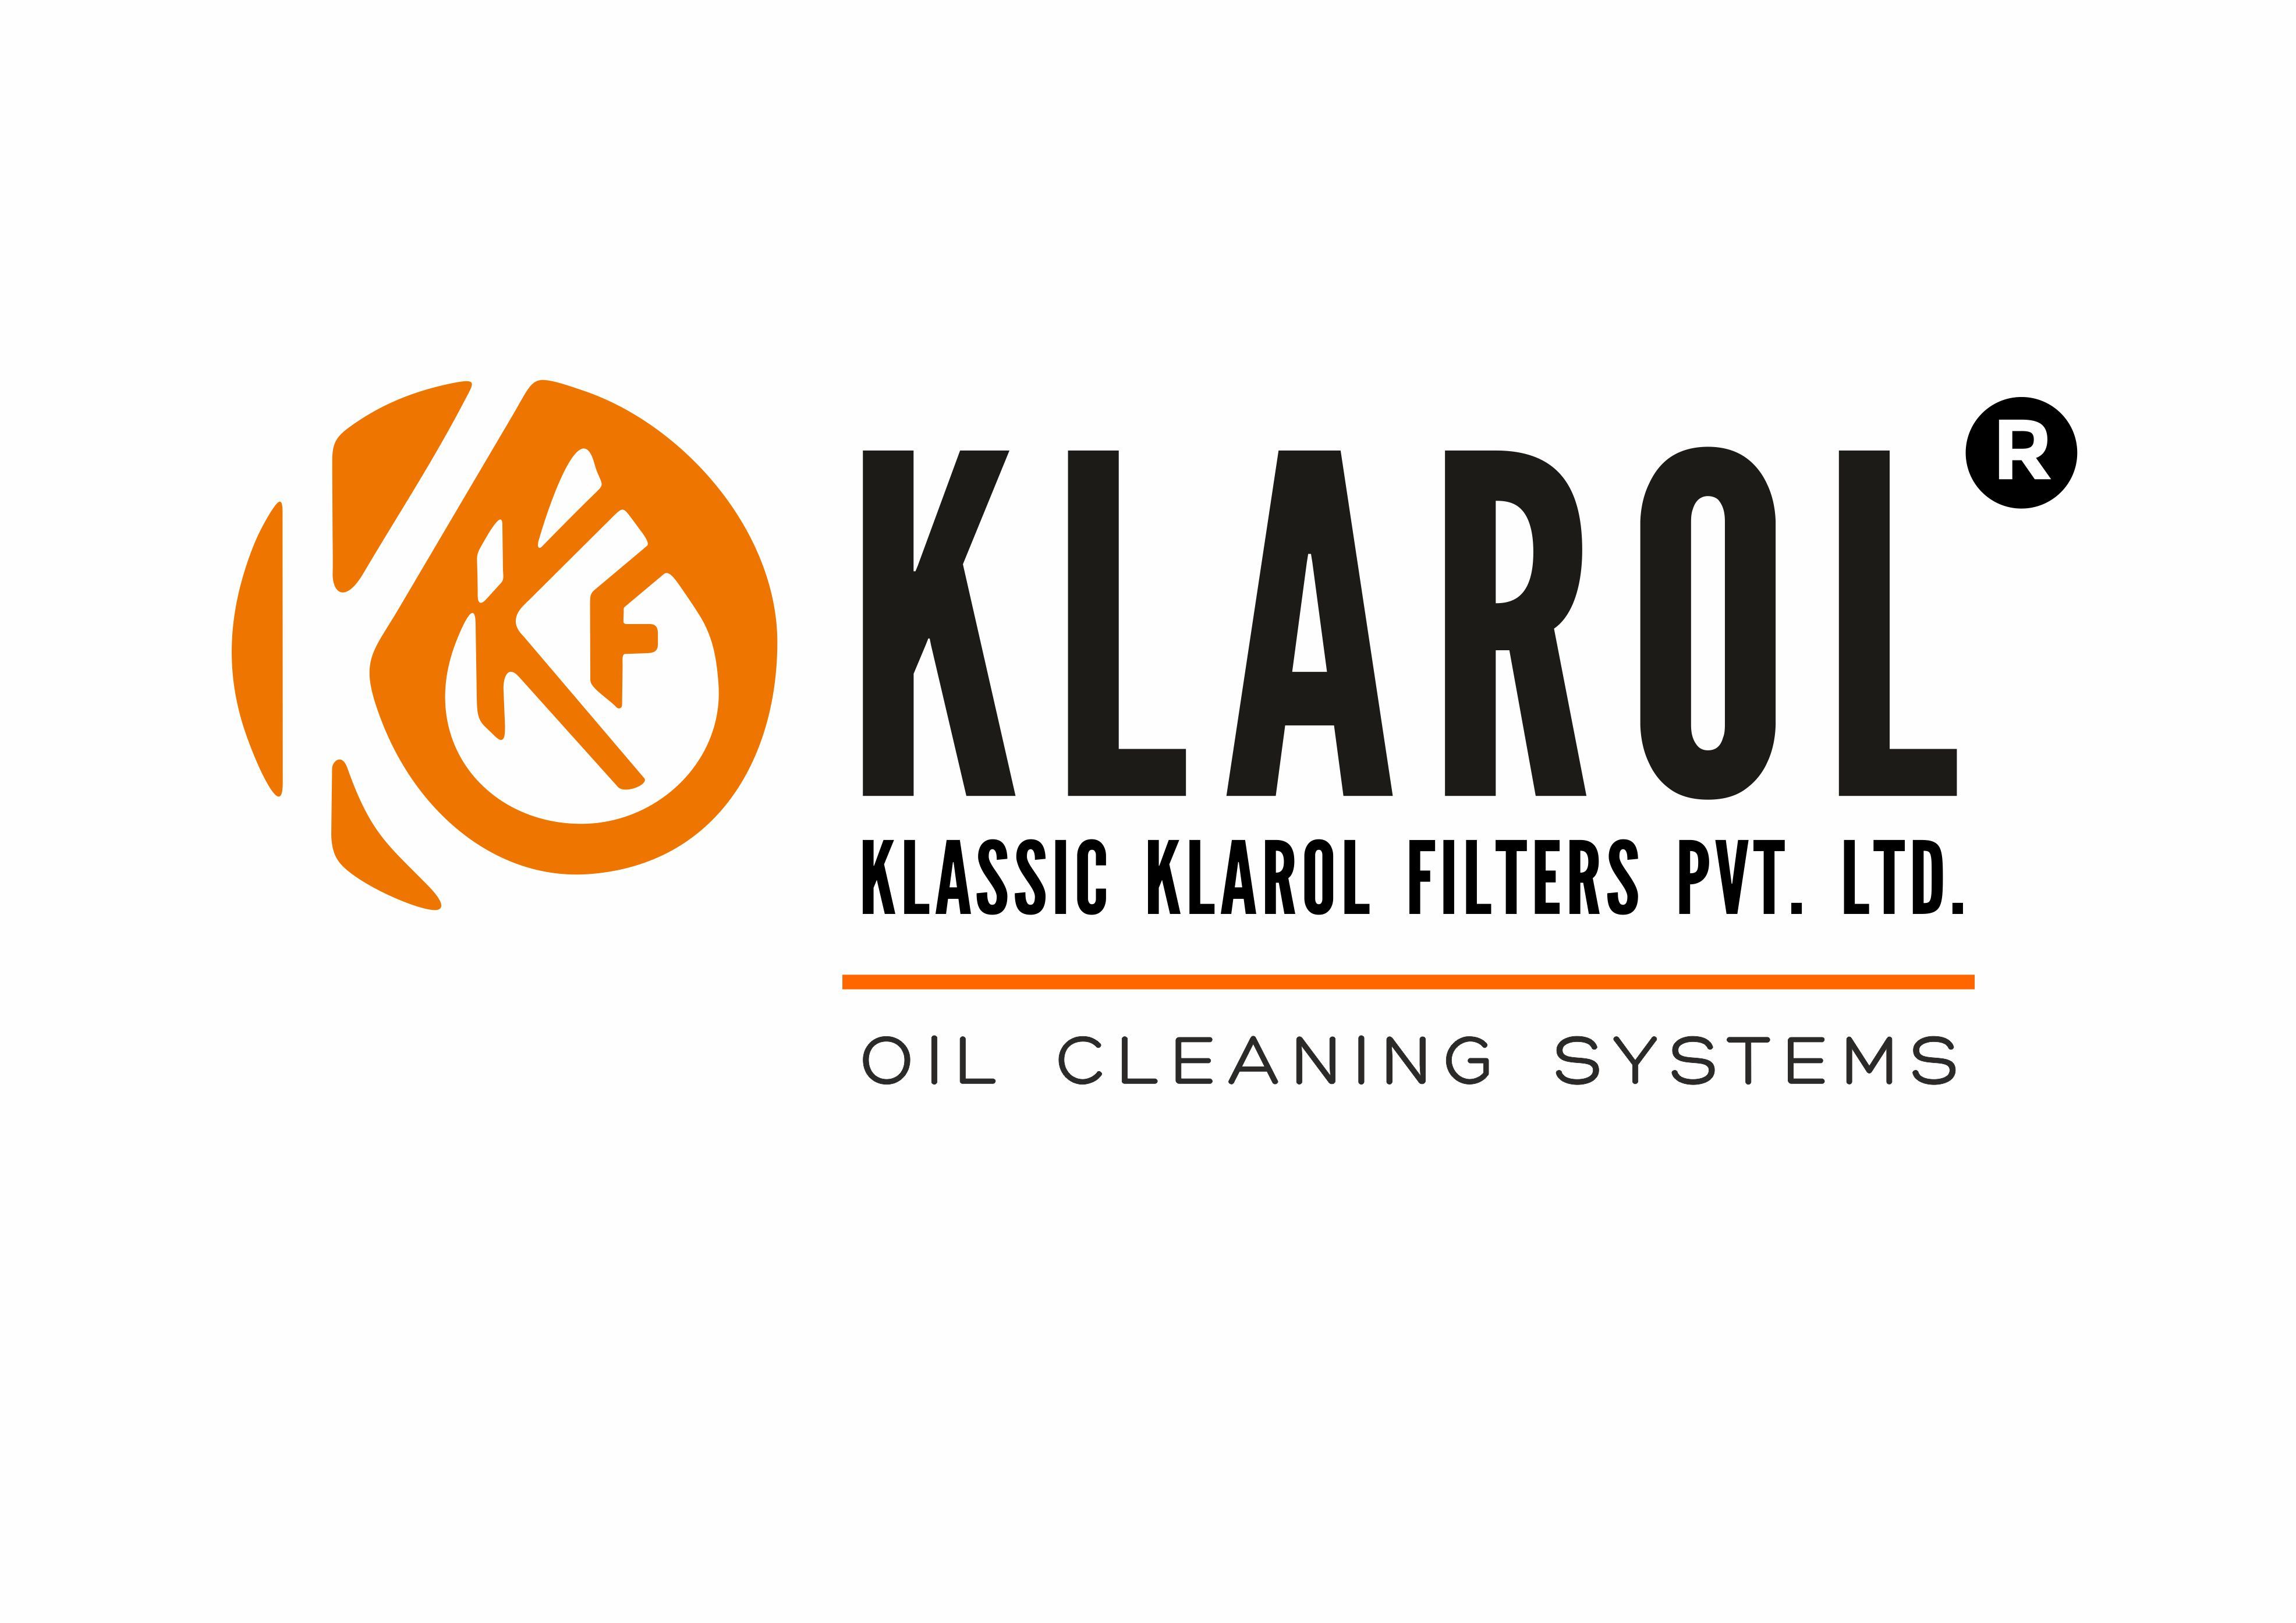 KLASSIC KLAROL FILTERS PVT LTD.